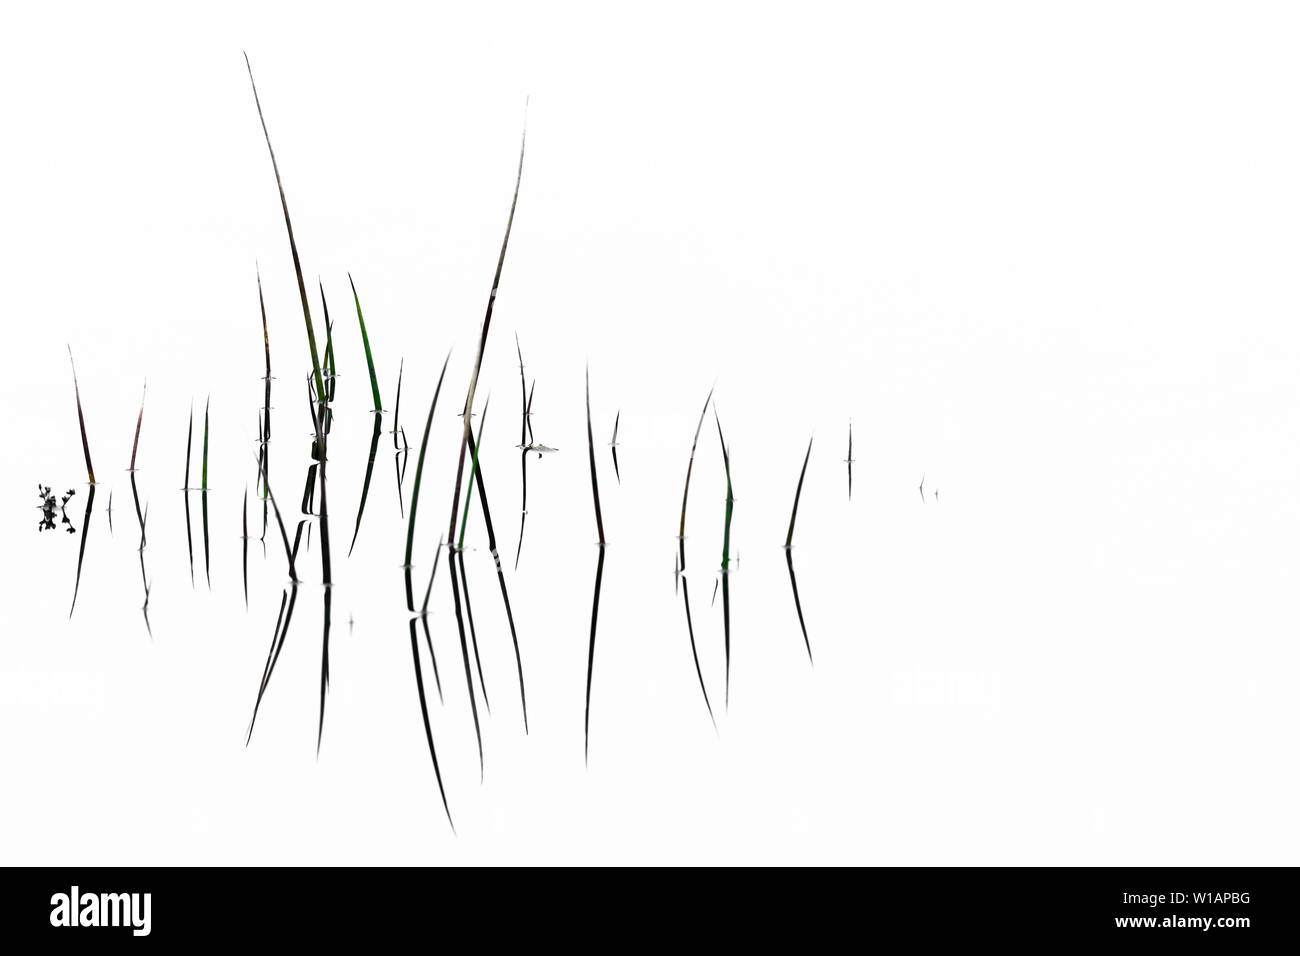 Brins d'herbe avec la réflexion sur la surface de l'eau, abstract, Ambleside, Lake District National Park, le Centre de l'Angleterre, Grande-Bretagne Banque D'Images